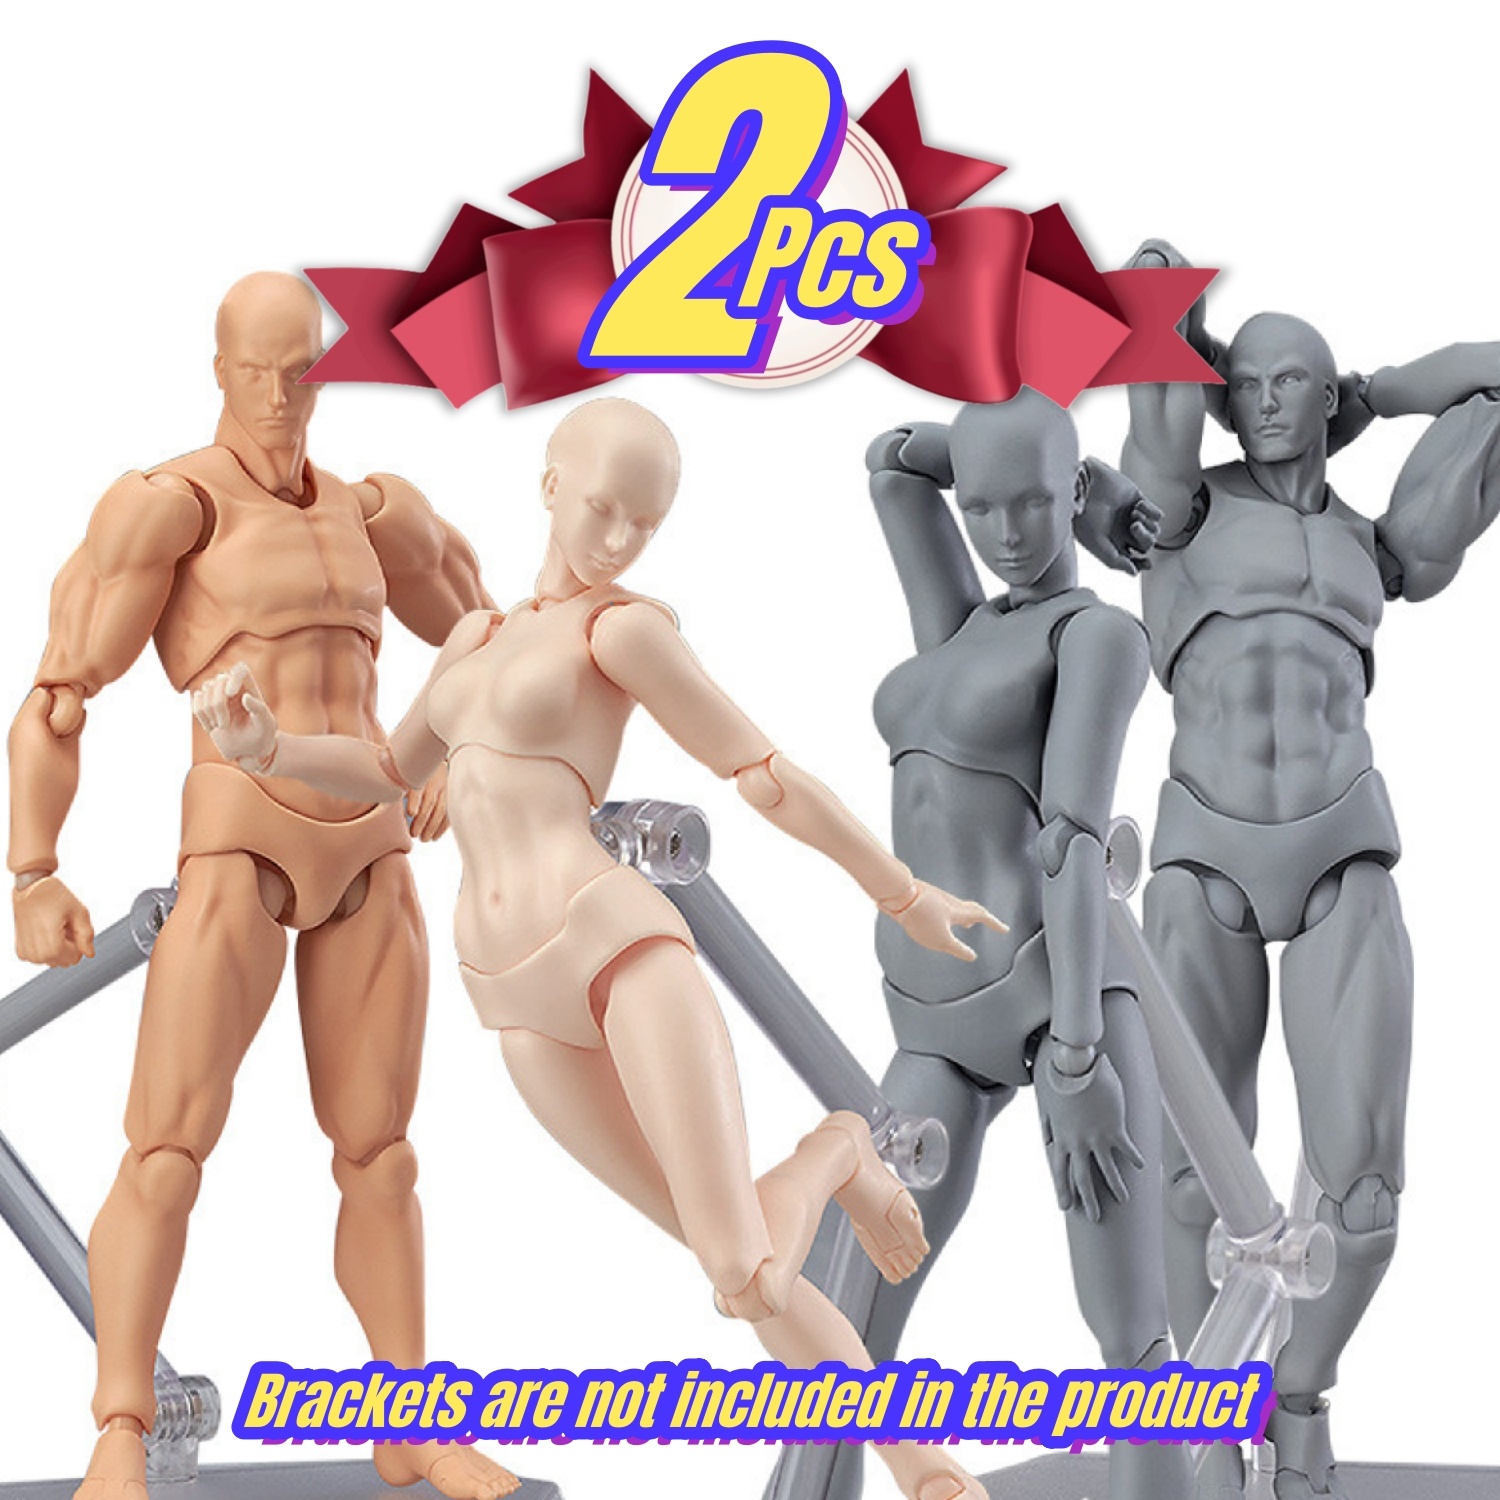 Body-kun Figures for Artists - bodykunfigures